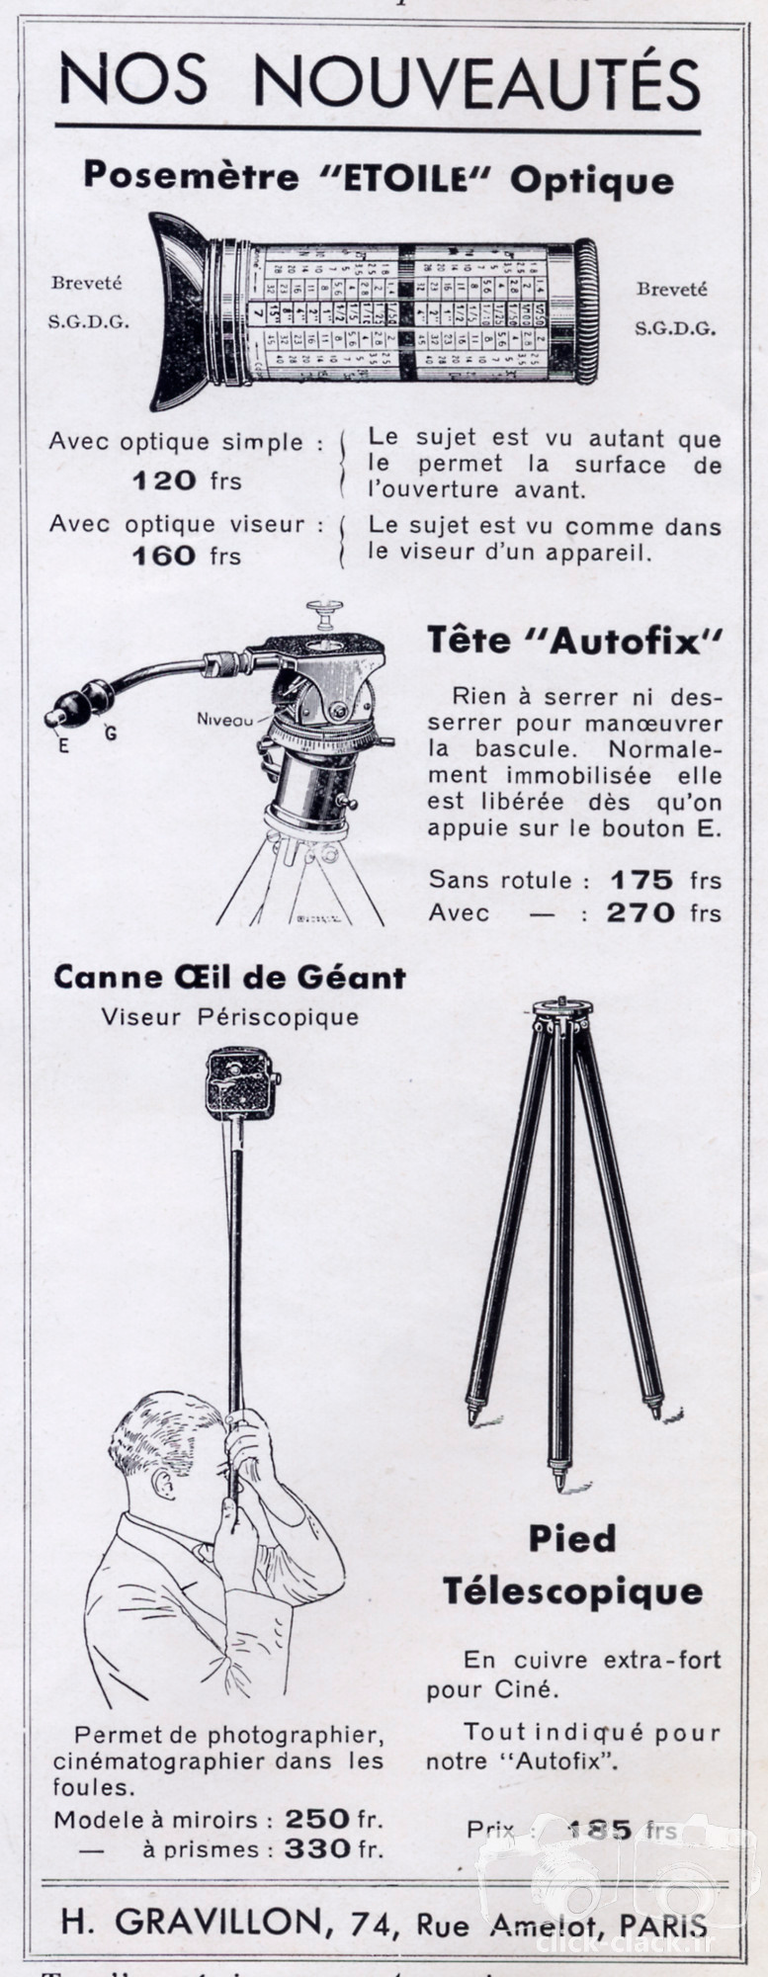 Gravillon - Posemètre Etoile optique, Tête Autofix, Canne oeil de Géant, Pied télescopique - 1933